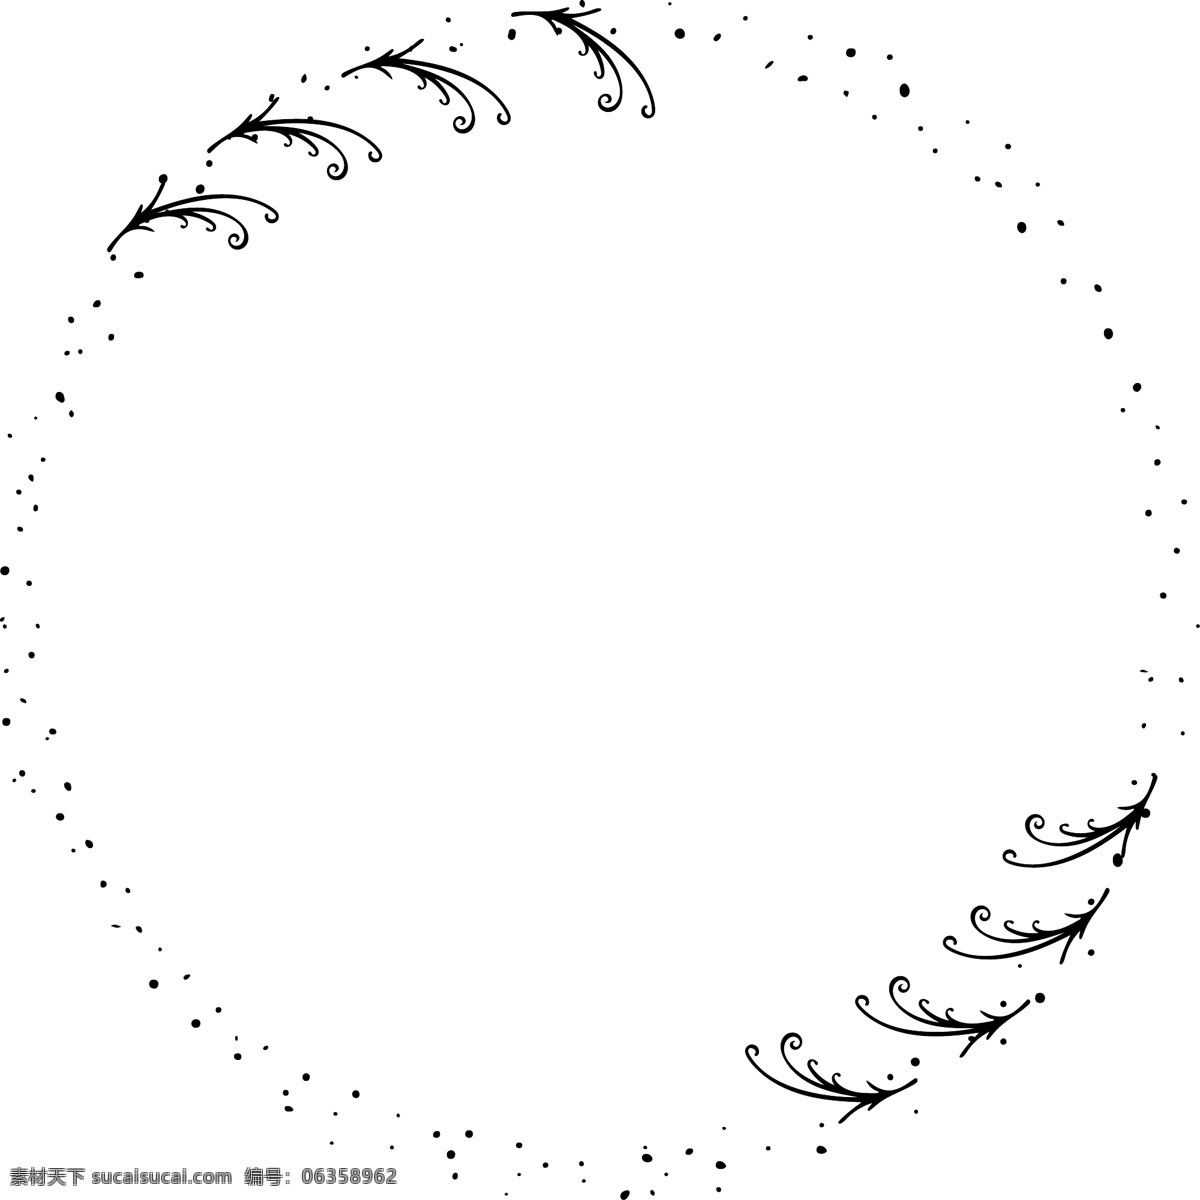 黑白 卡通 圆环 边框 蝴蝶 动物 植物 线条背景 几何图案 边框素材